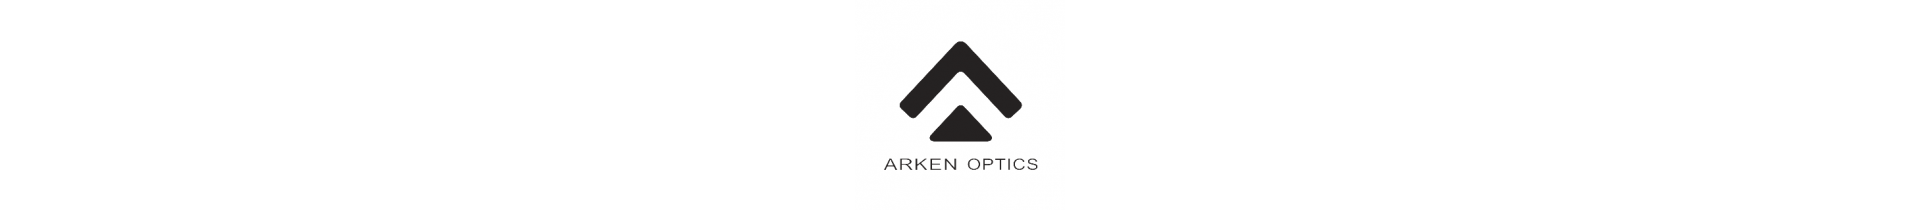 Retrouvez sur www.tactirshop.fr les optiques et accessoires Arken Optics